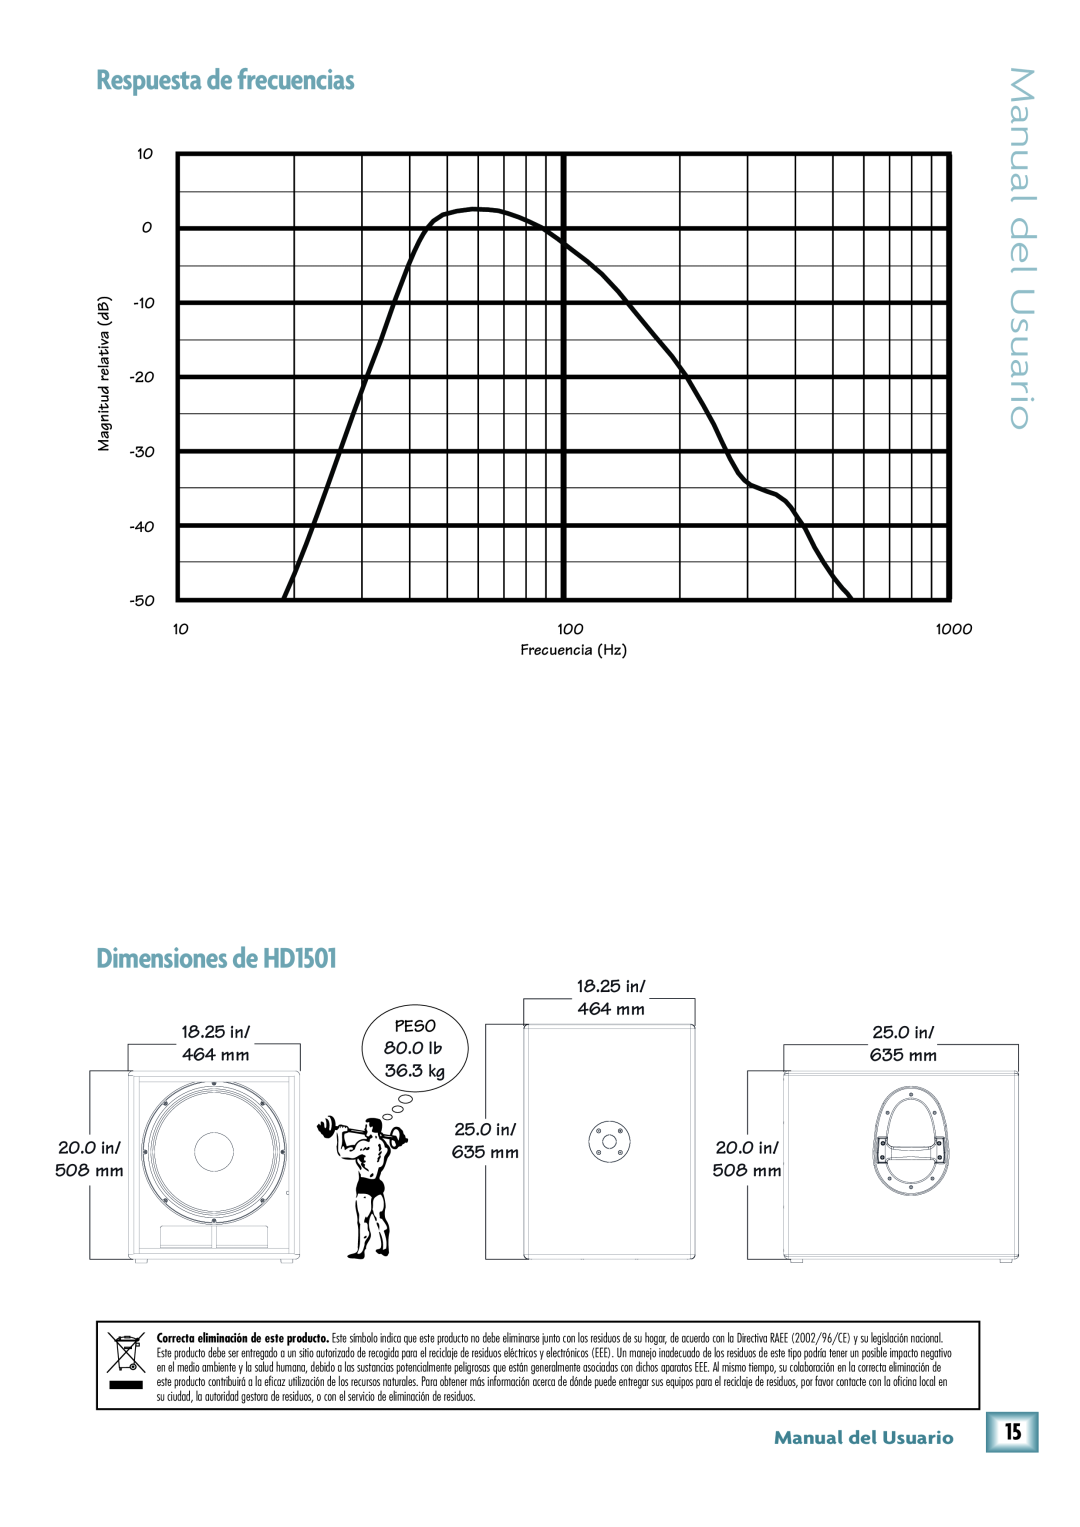 Mackie Respuesta de frecuencias, Dimensiones de HD1501, Manual del Usuario, 18.25 in, 464 mm, 20.0 in, 25.0 in, 635 mm 